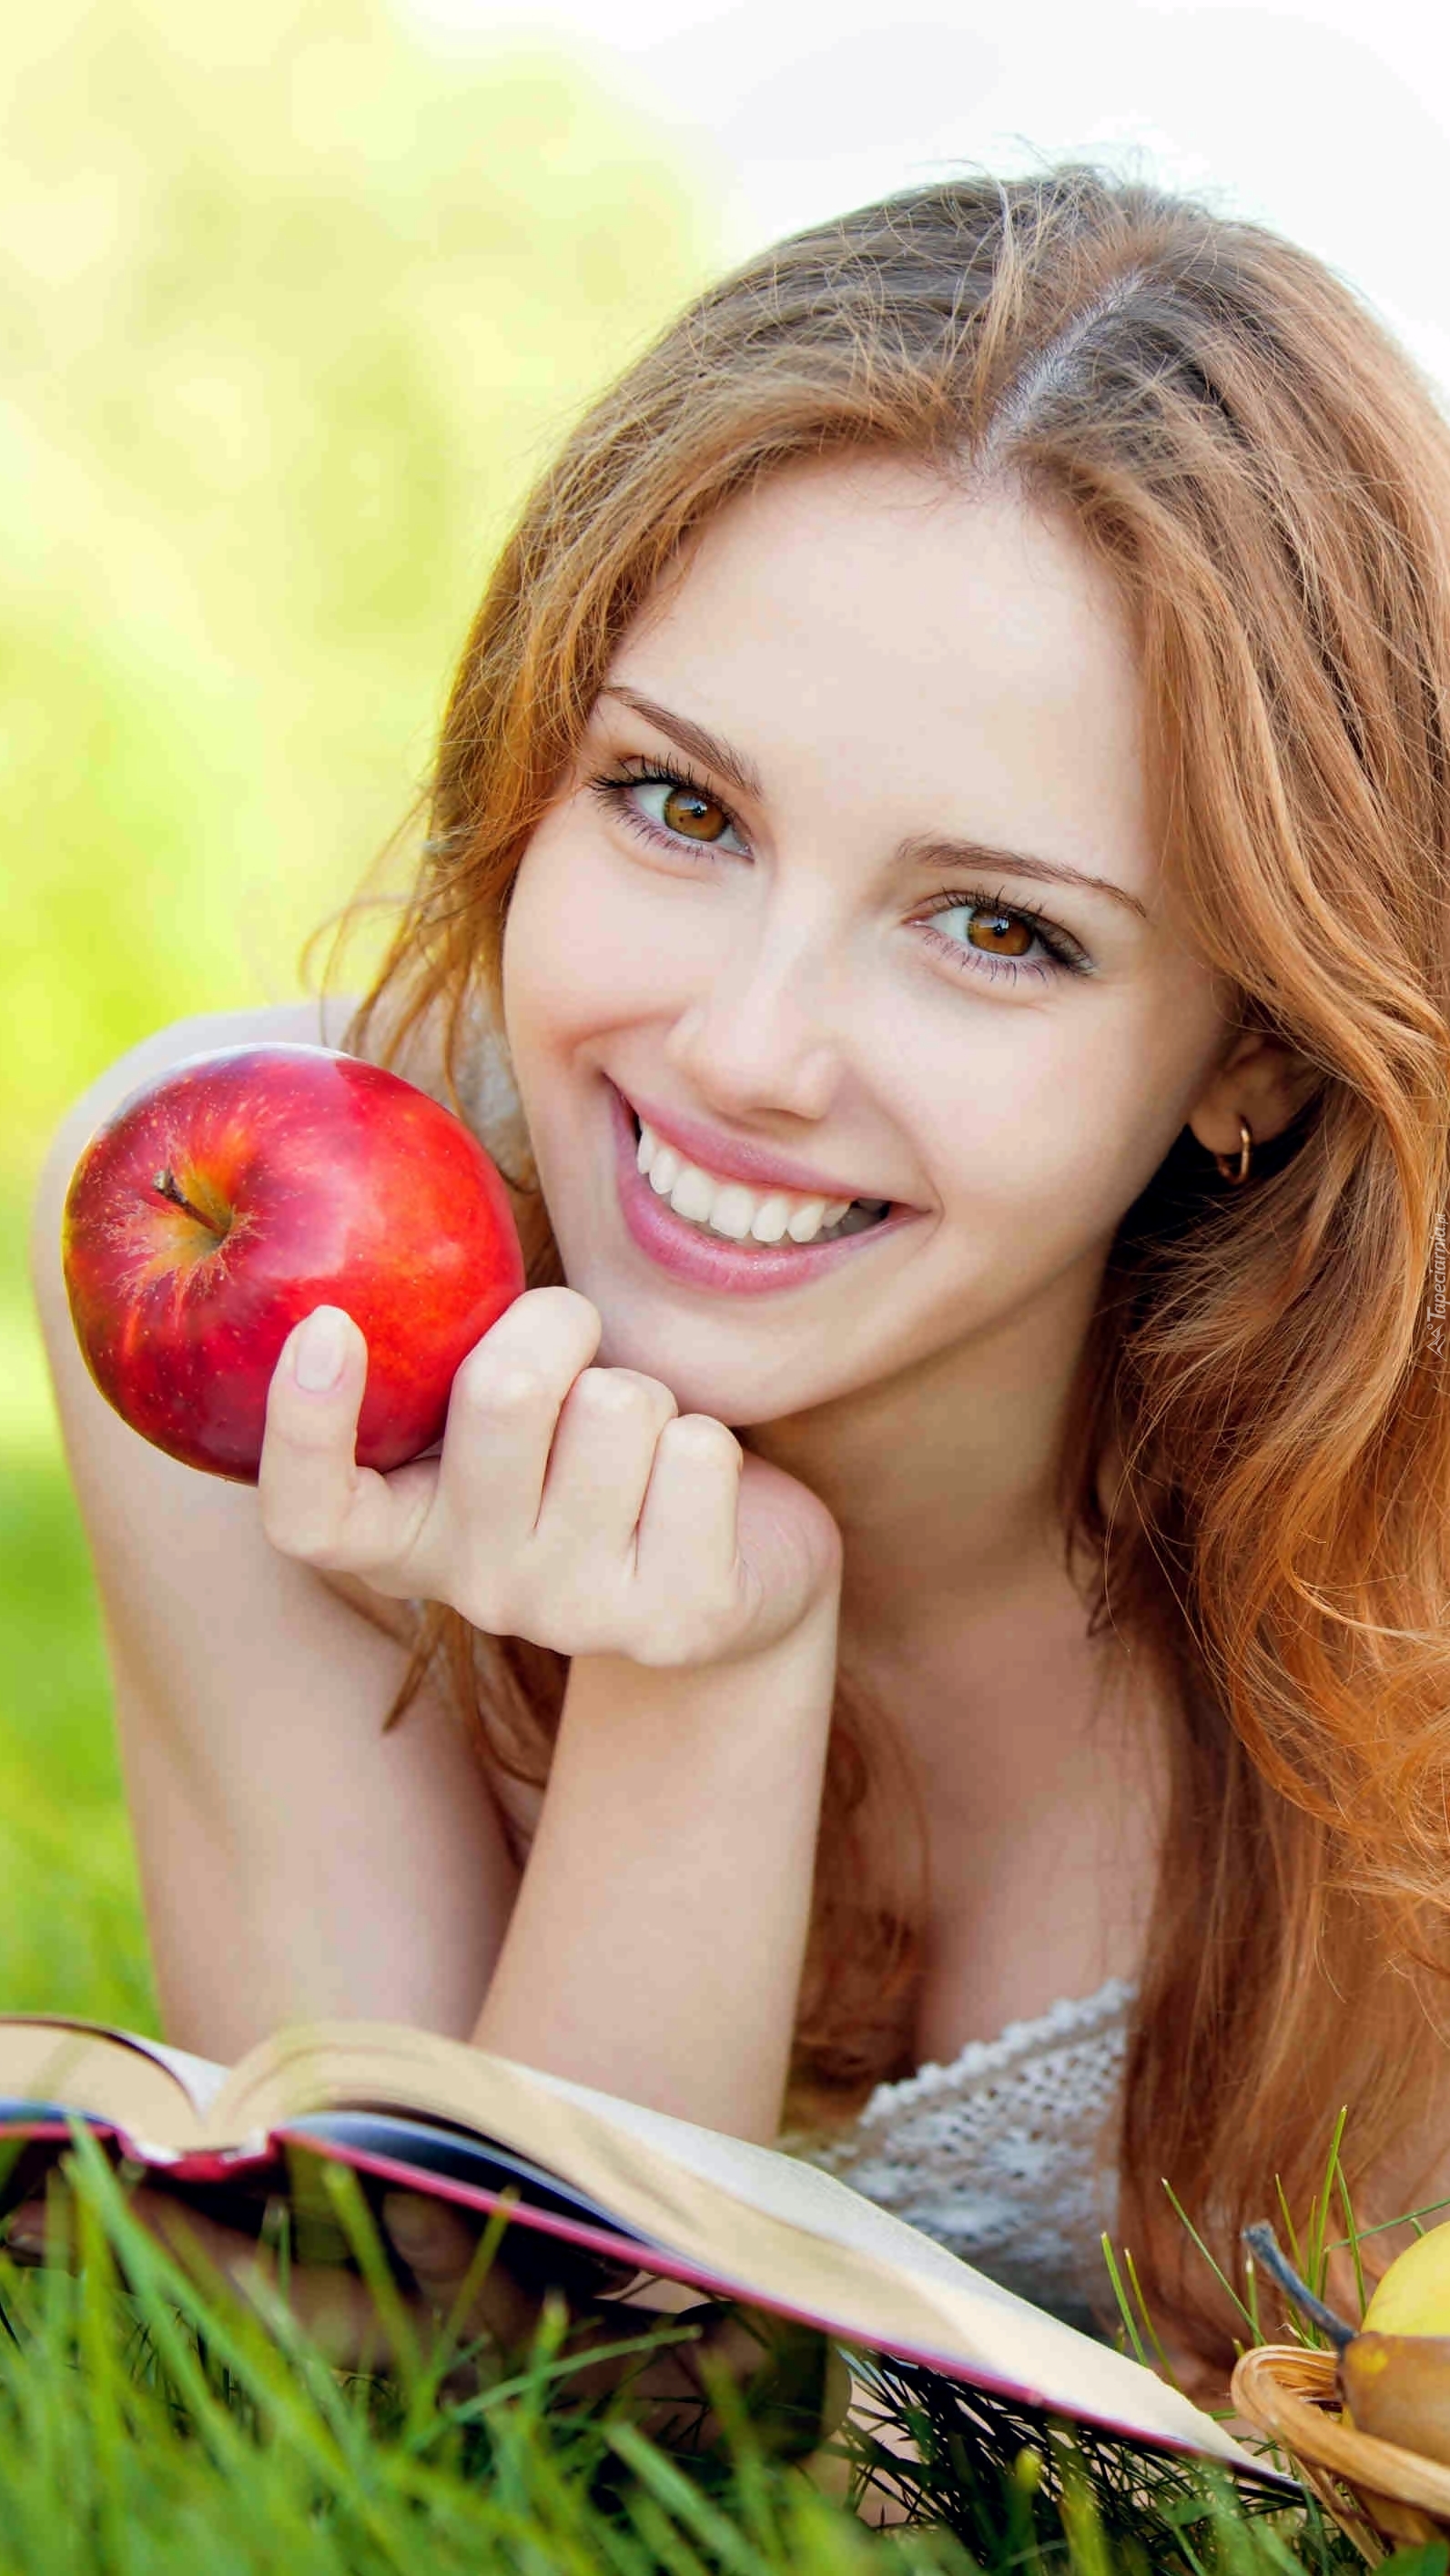 Dziewczyna z książką i jabłkiem w dłoni